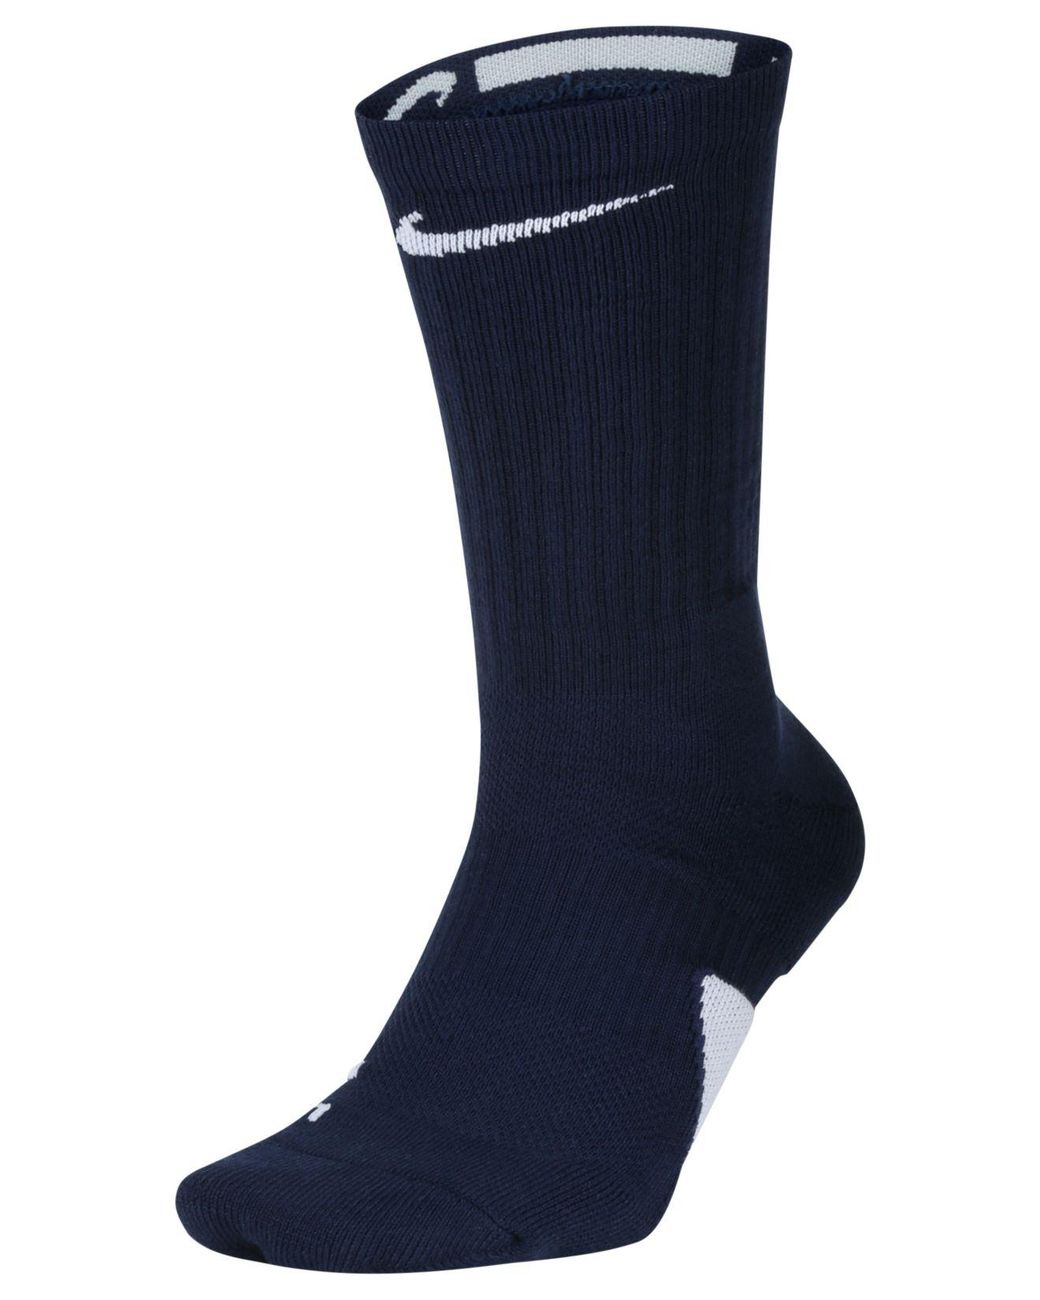 Nike Elite Crew Socks in Midnight Navy/White (Blue) for Men - Save 18% ...